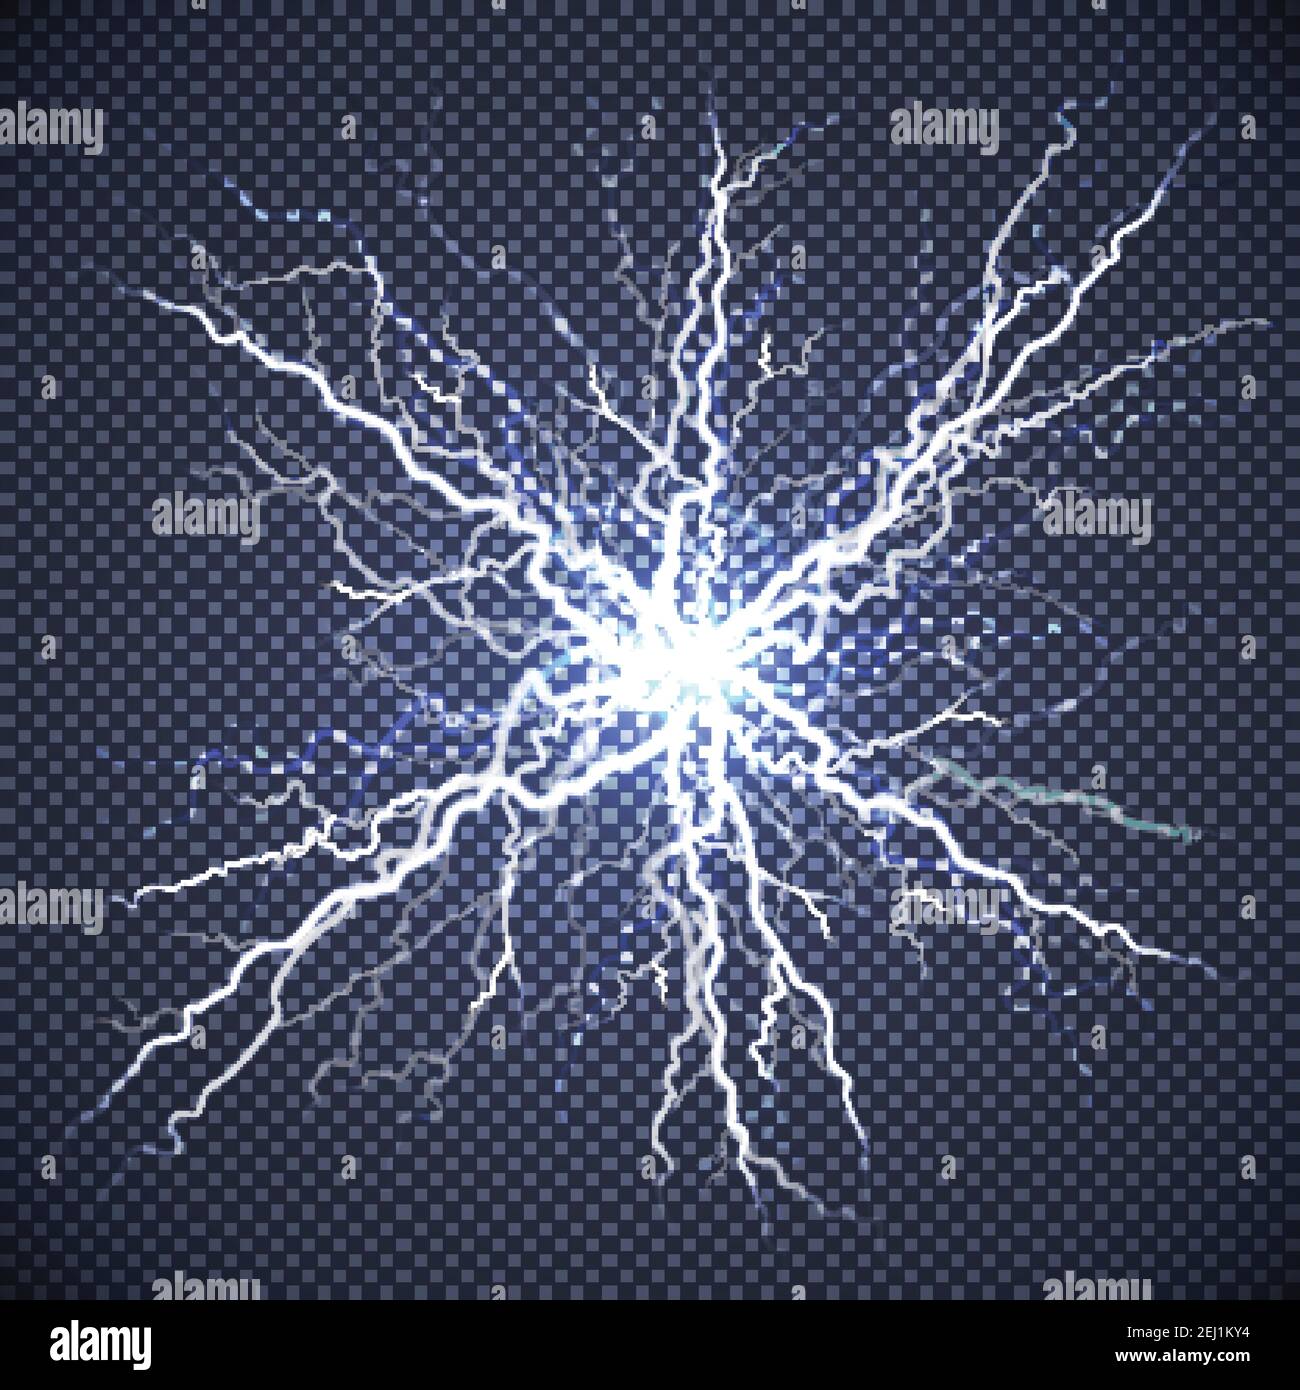 Eclairage électrique lumière intense lumière Starburst atmosphère phénomène  sur sombre transparent arrière-plan décoratif illustration vectorielle  réaliste de l'image Image Vectorielle Stock - Alamy